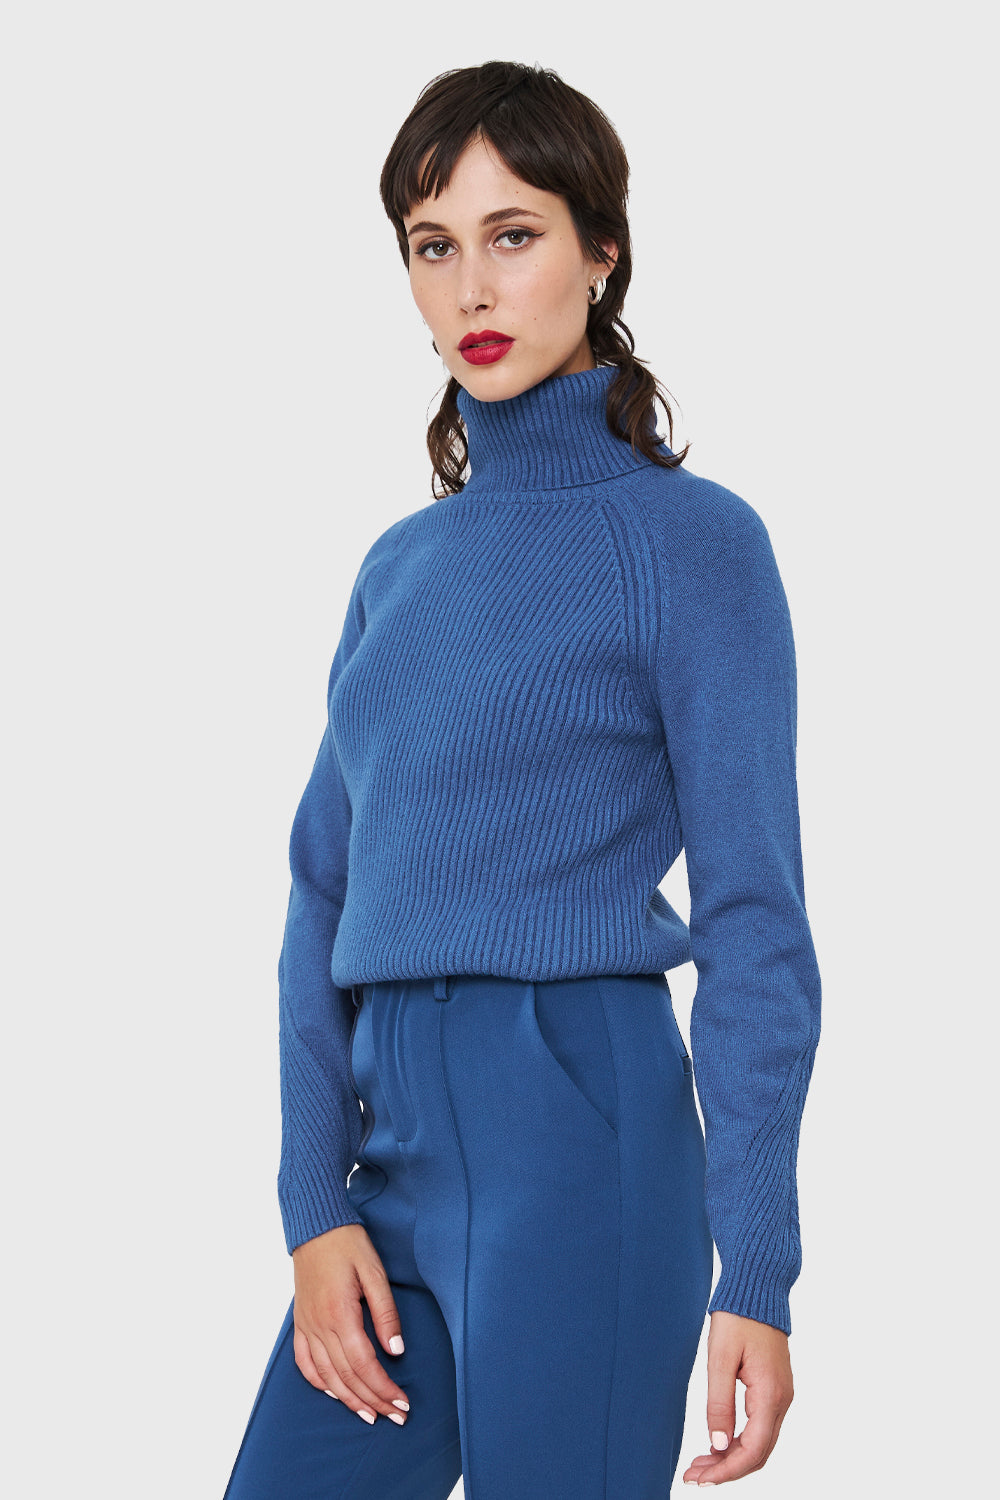 Sweater Beatle Acanalado Azul Índigo